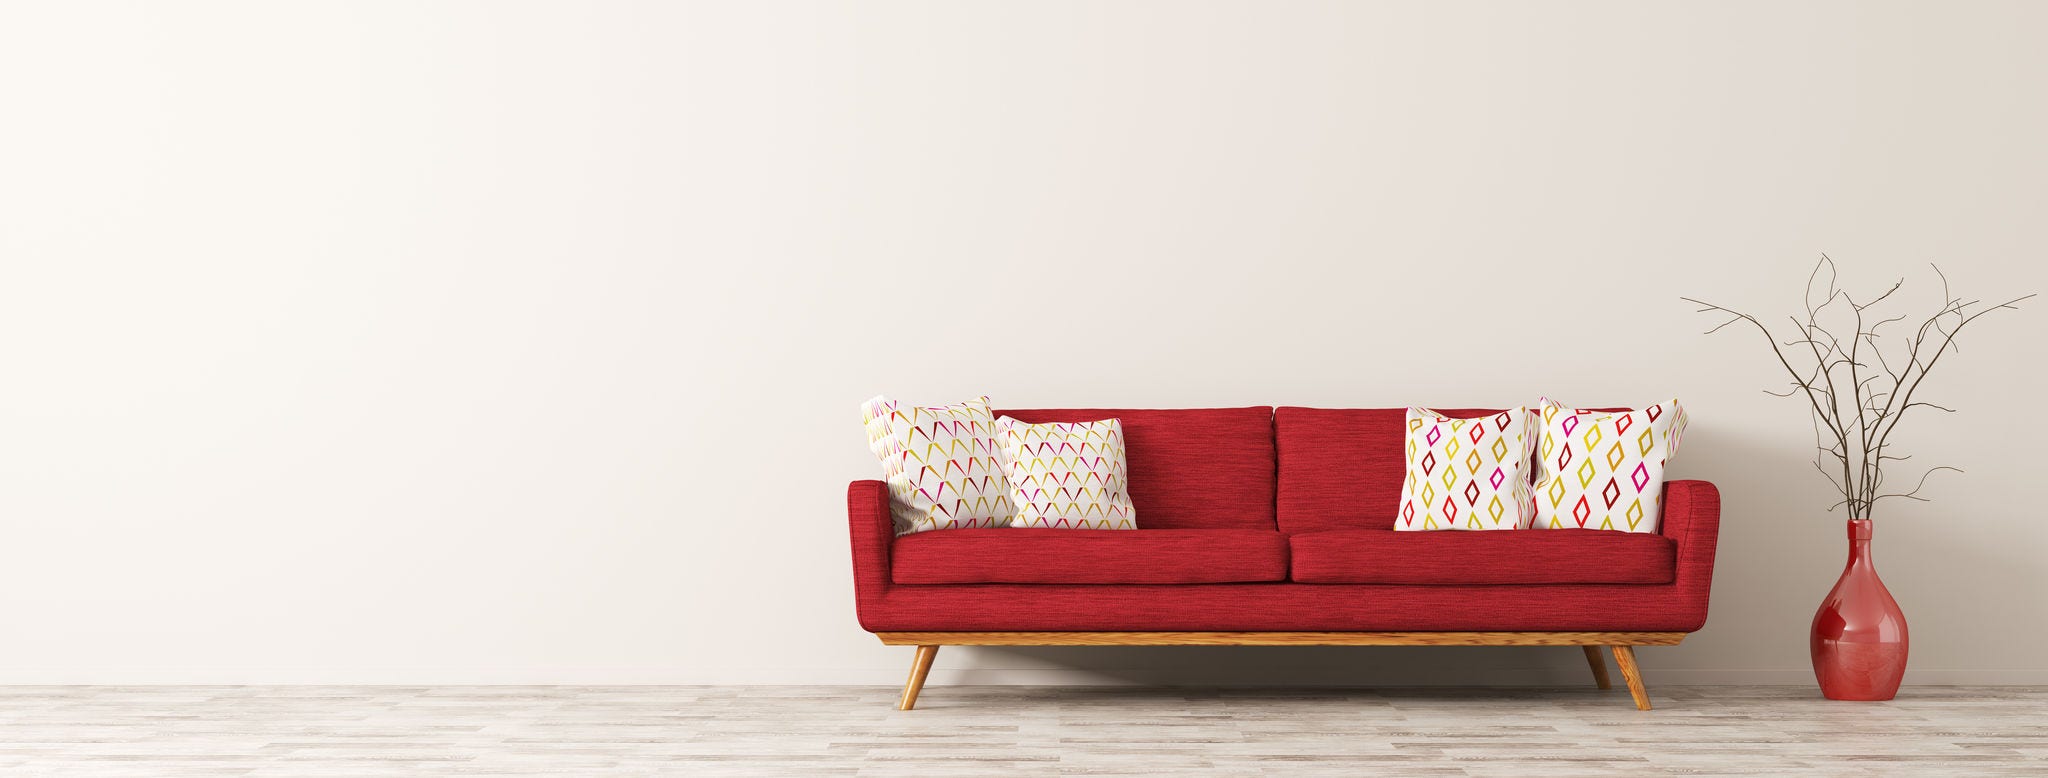 Interior moderno da sala de estar com sofá vermelho